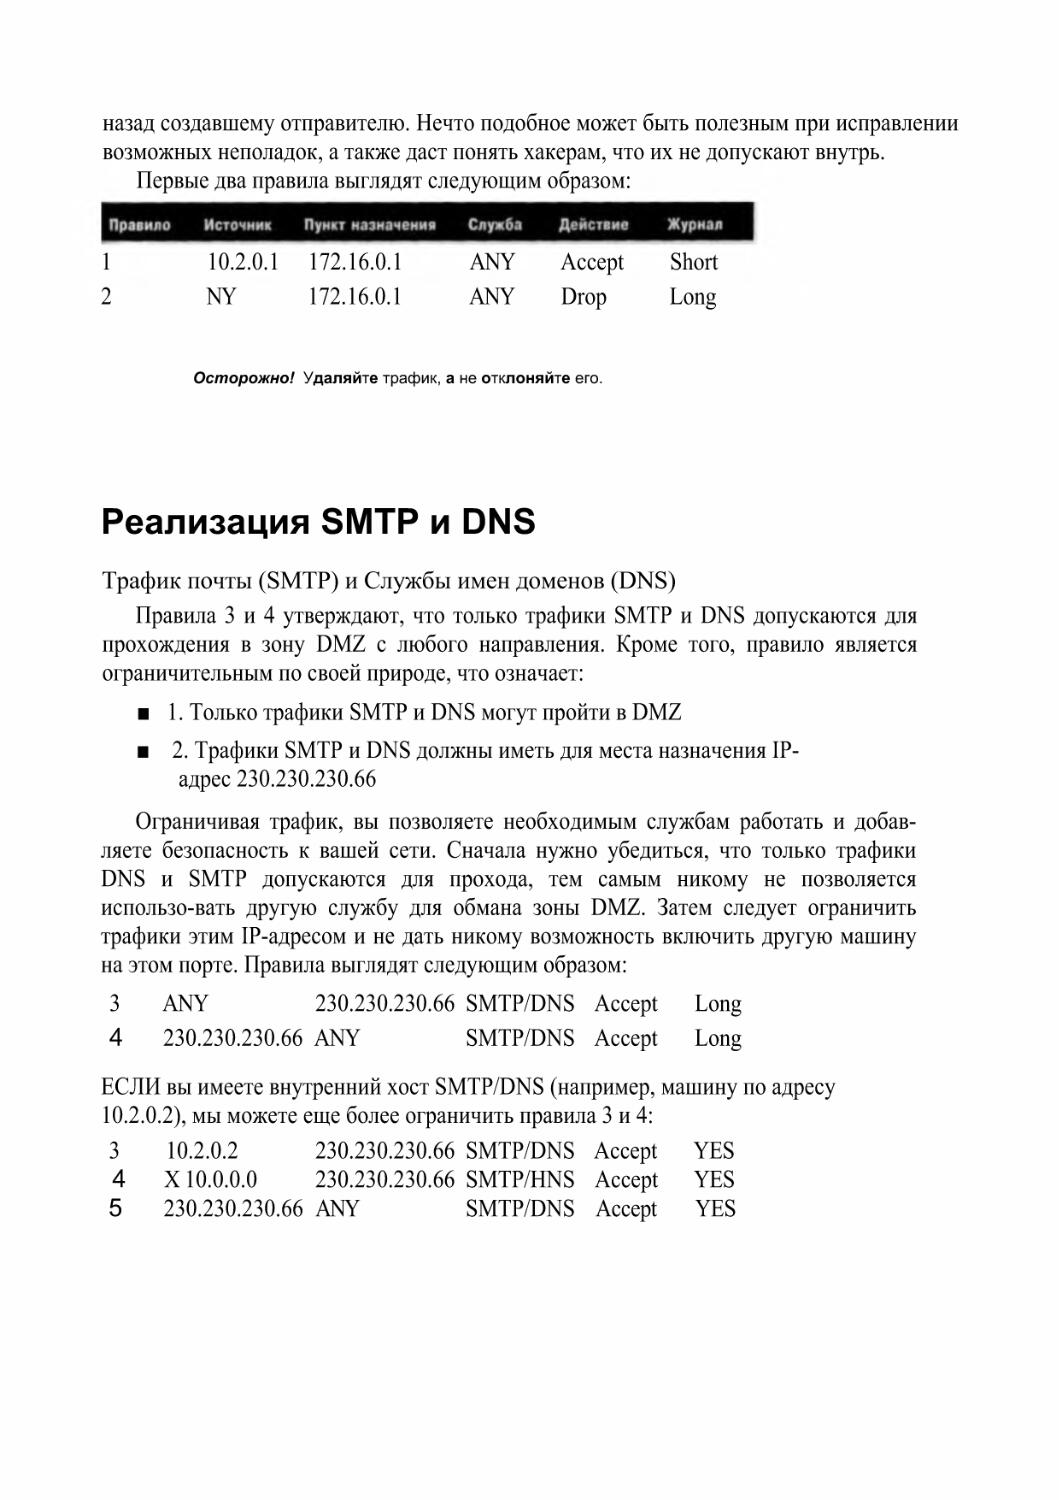 Реализация SMTP и DNS